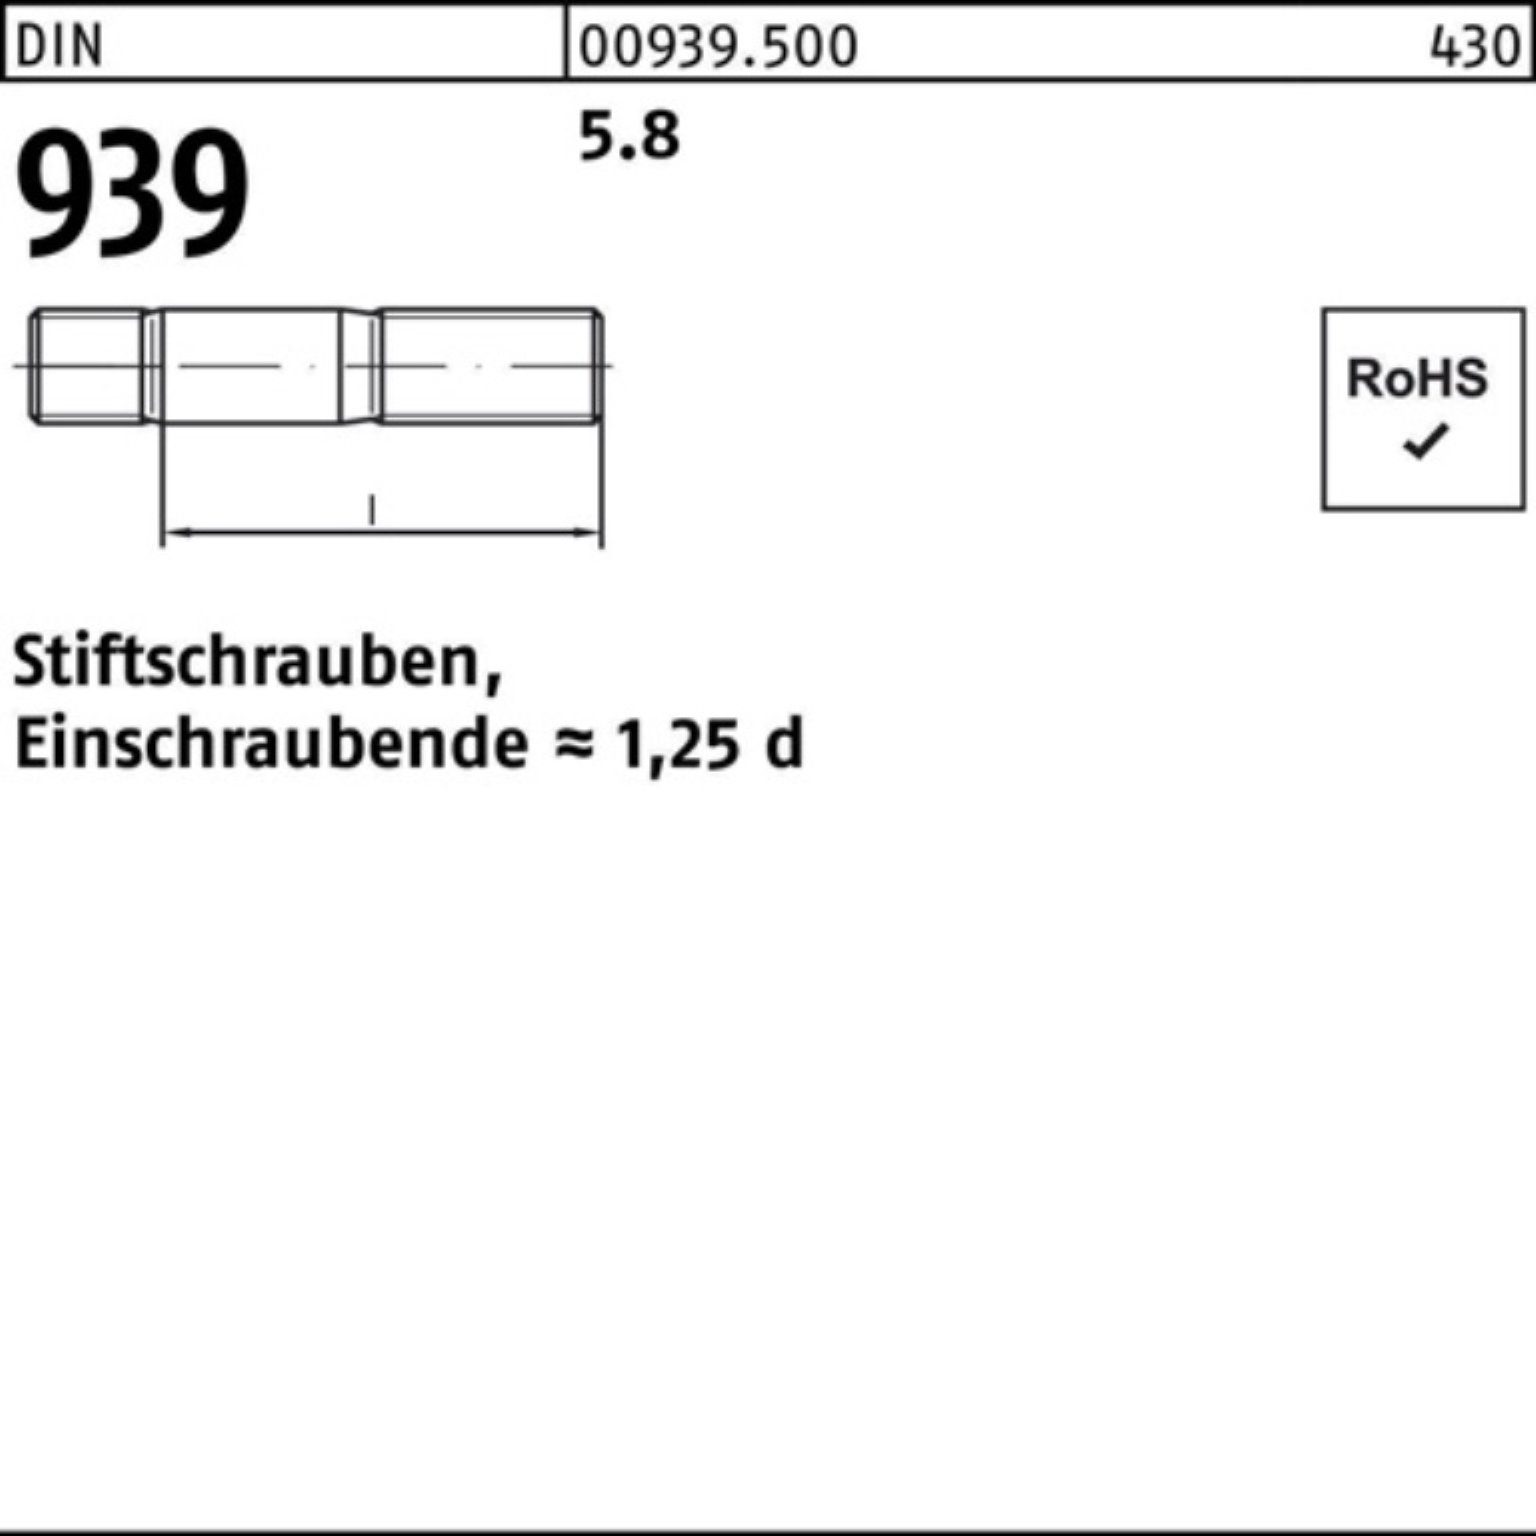 Reyher Pack 25 DIN S 5.8 Stiftschraube Stiftschraube 939 80 M16x Einschraubende=1,25d 100er